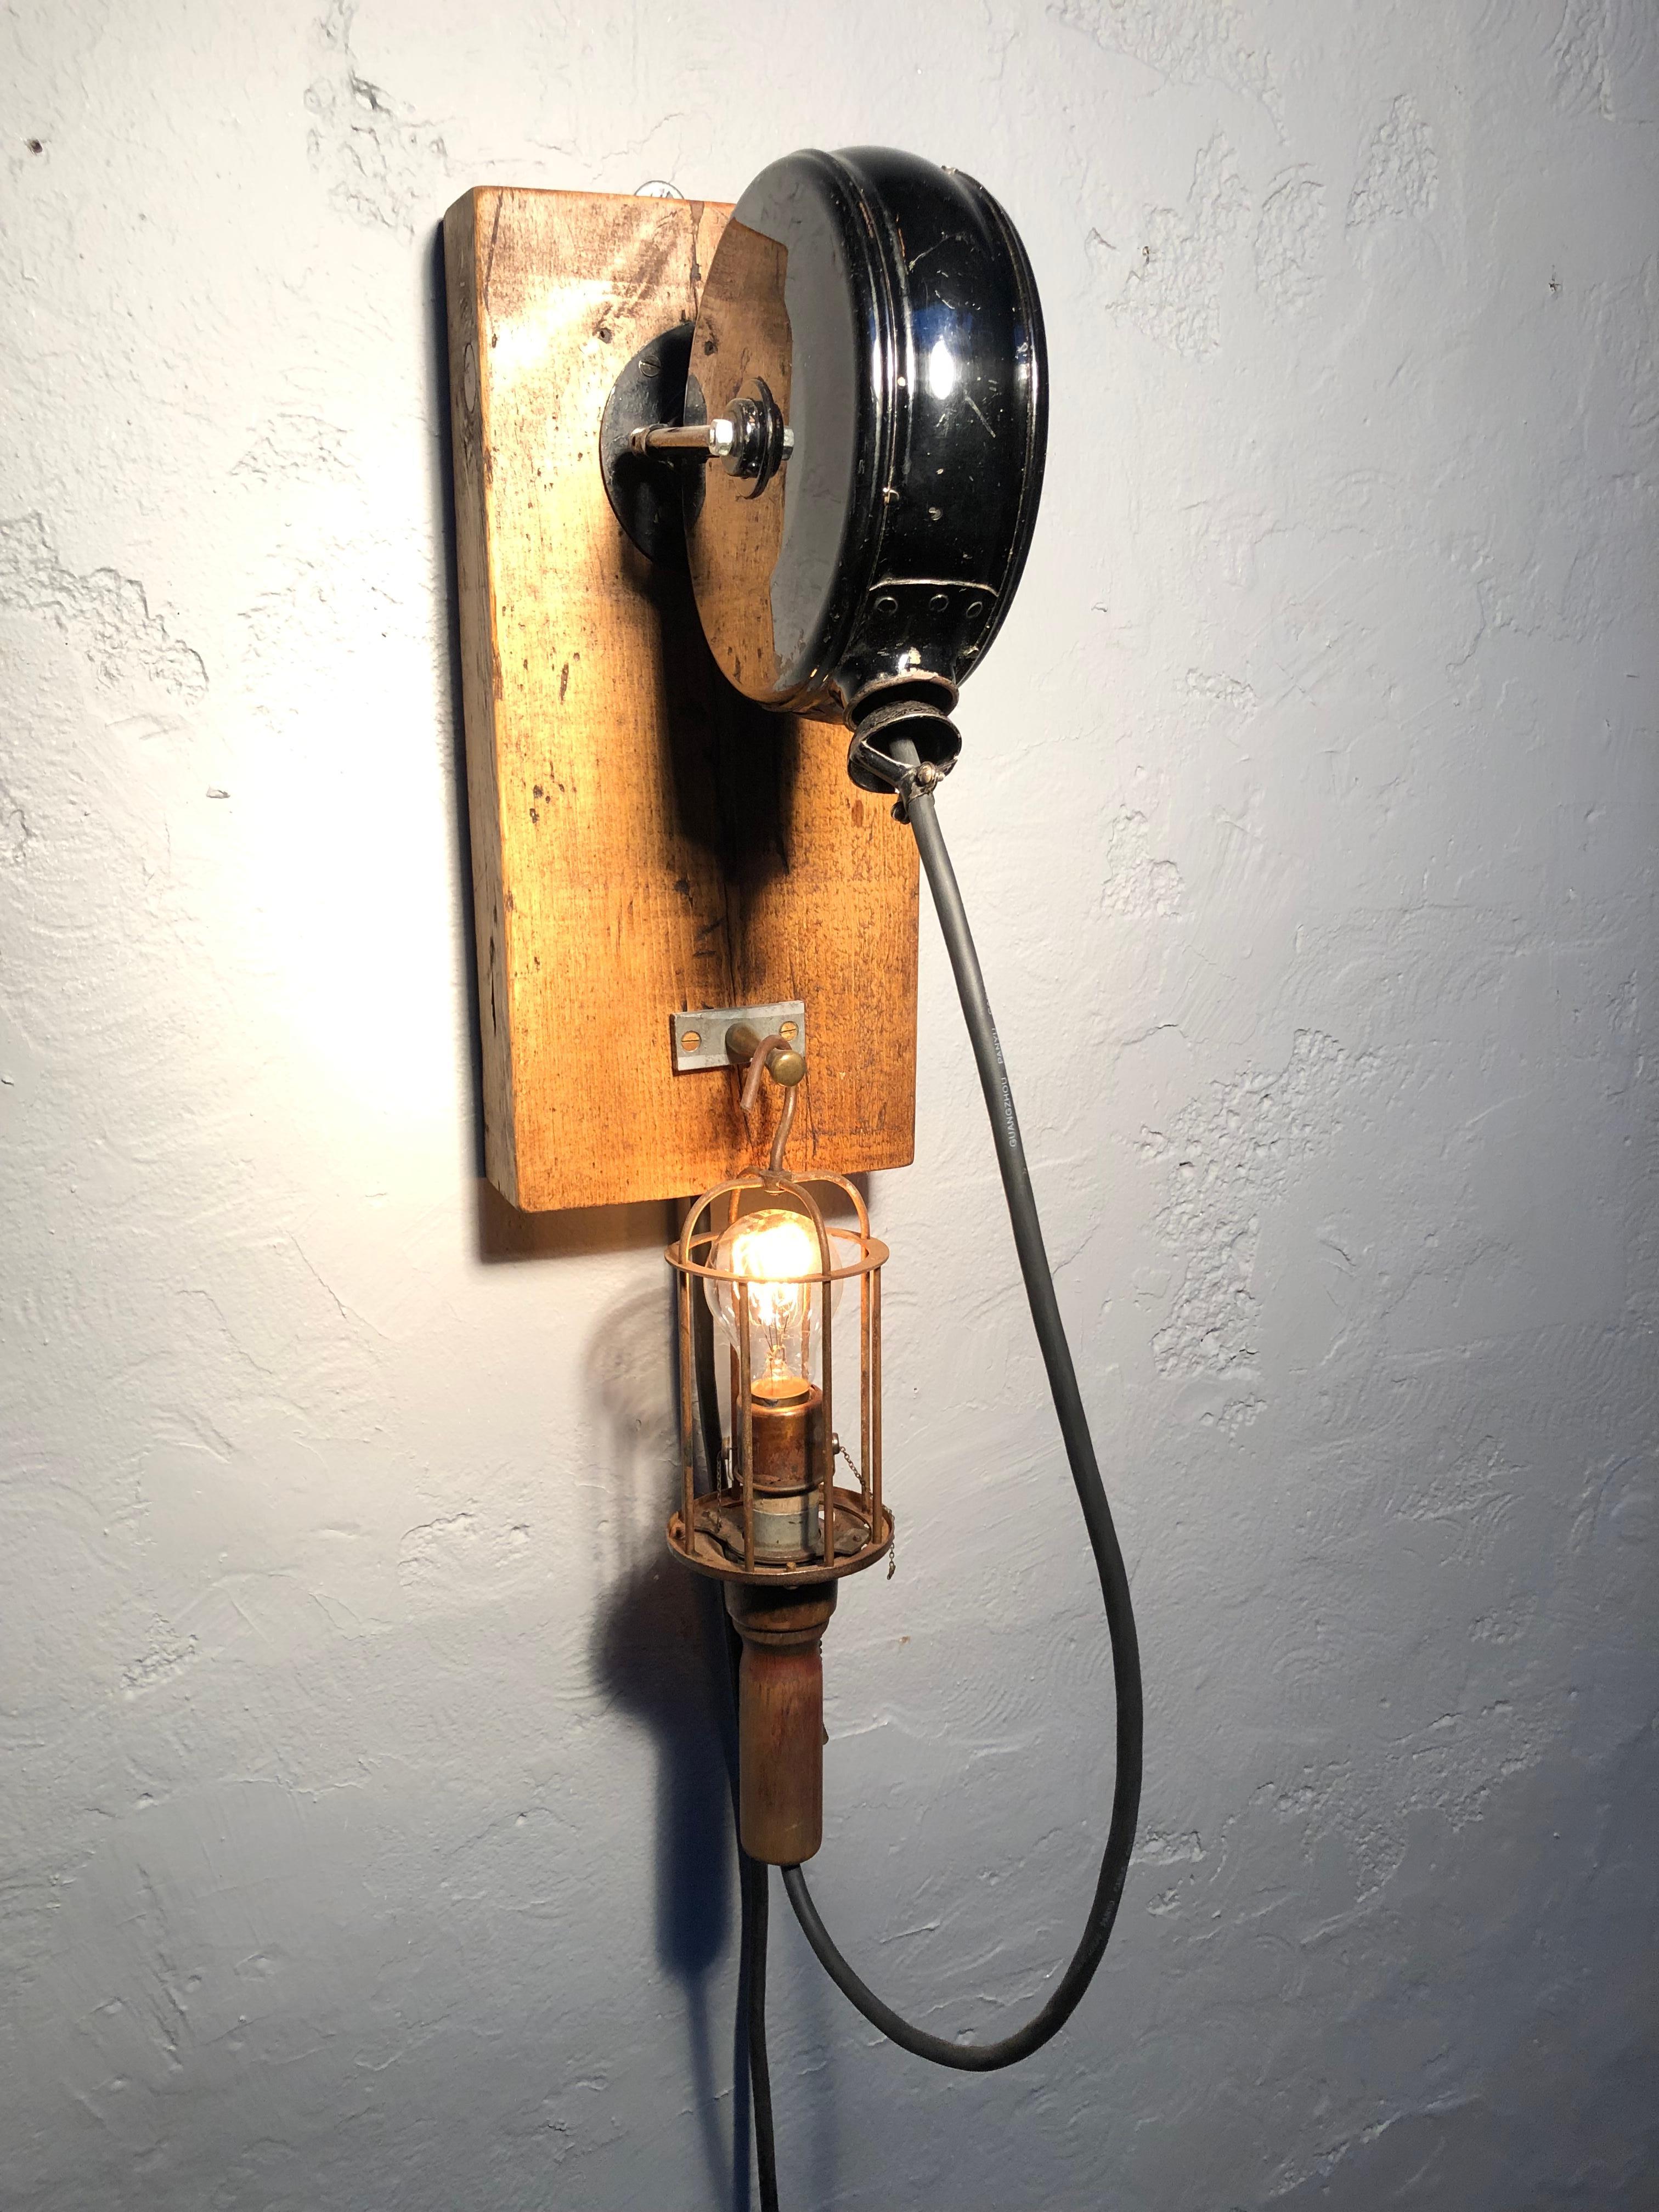 Une lampe de travail industrielle ancienne à enrouleur rétractable montée sur un mur.
Une lampe industrielle très cool et polyvalente. 
Equipé d'un variateur de lumière antique et d'une ampoule antique à filament de carbone. 
Lampe à cage en bois et